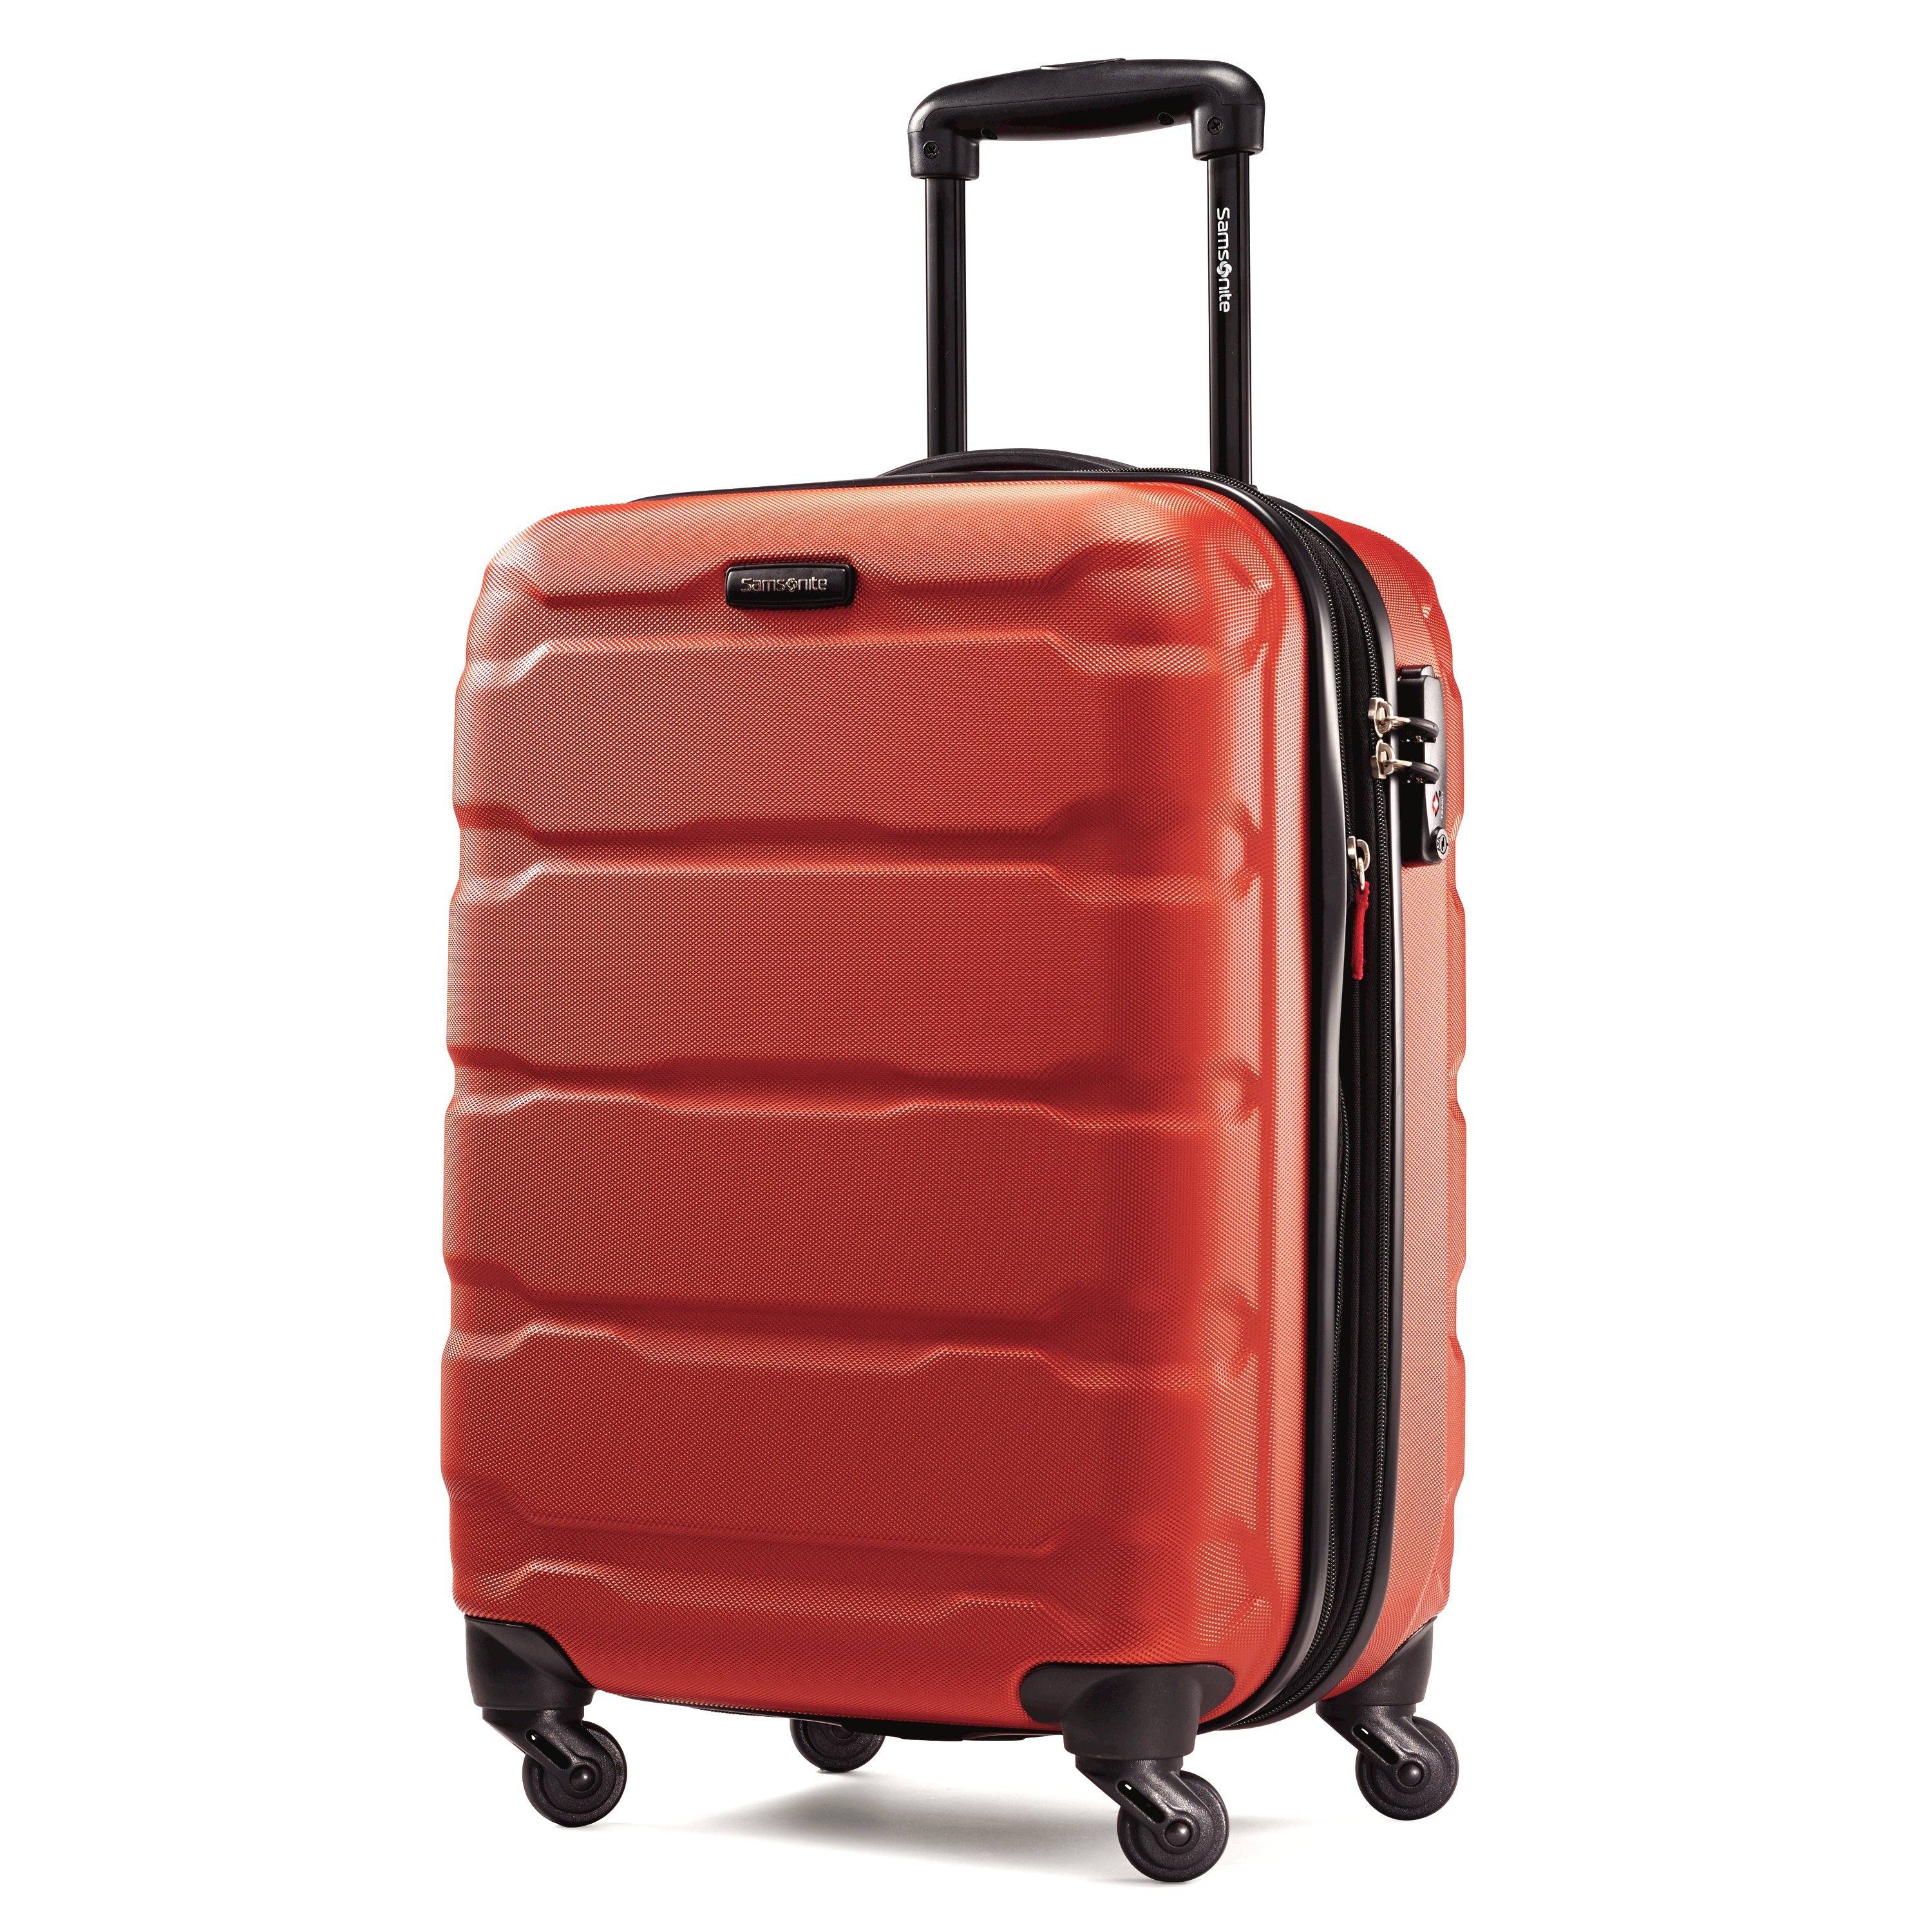 Samsonite PC 3 Piece Set (20"/24"/28") Hardshell 4-Wheel Luggage Sets Luggage Online